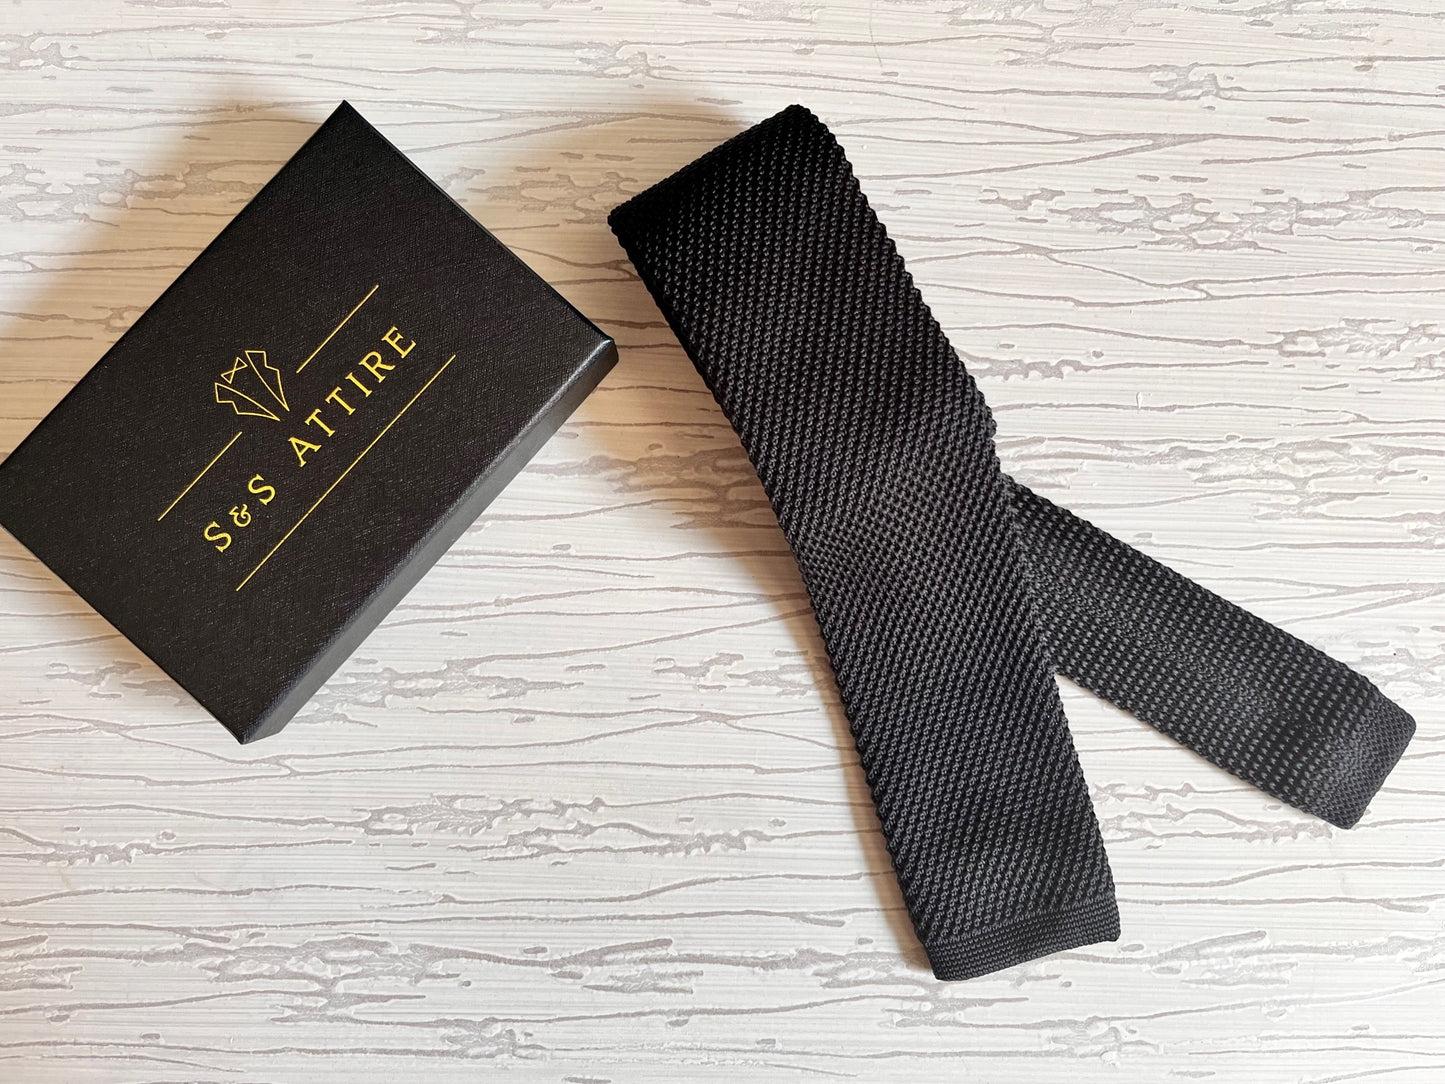 S&S Attire Knitted Tie Black